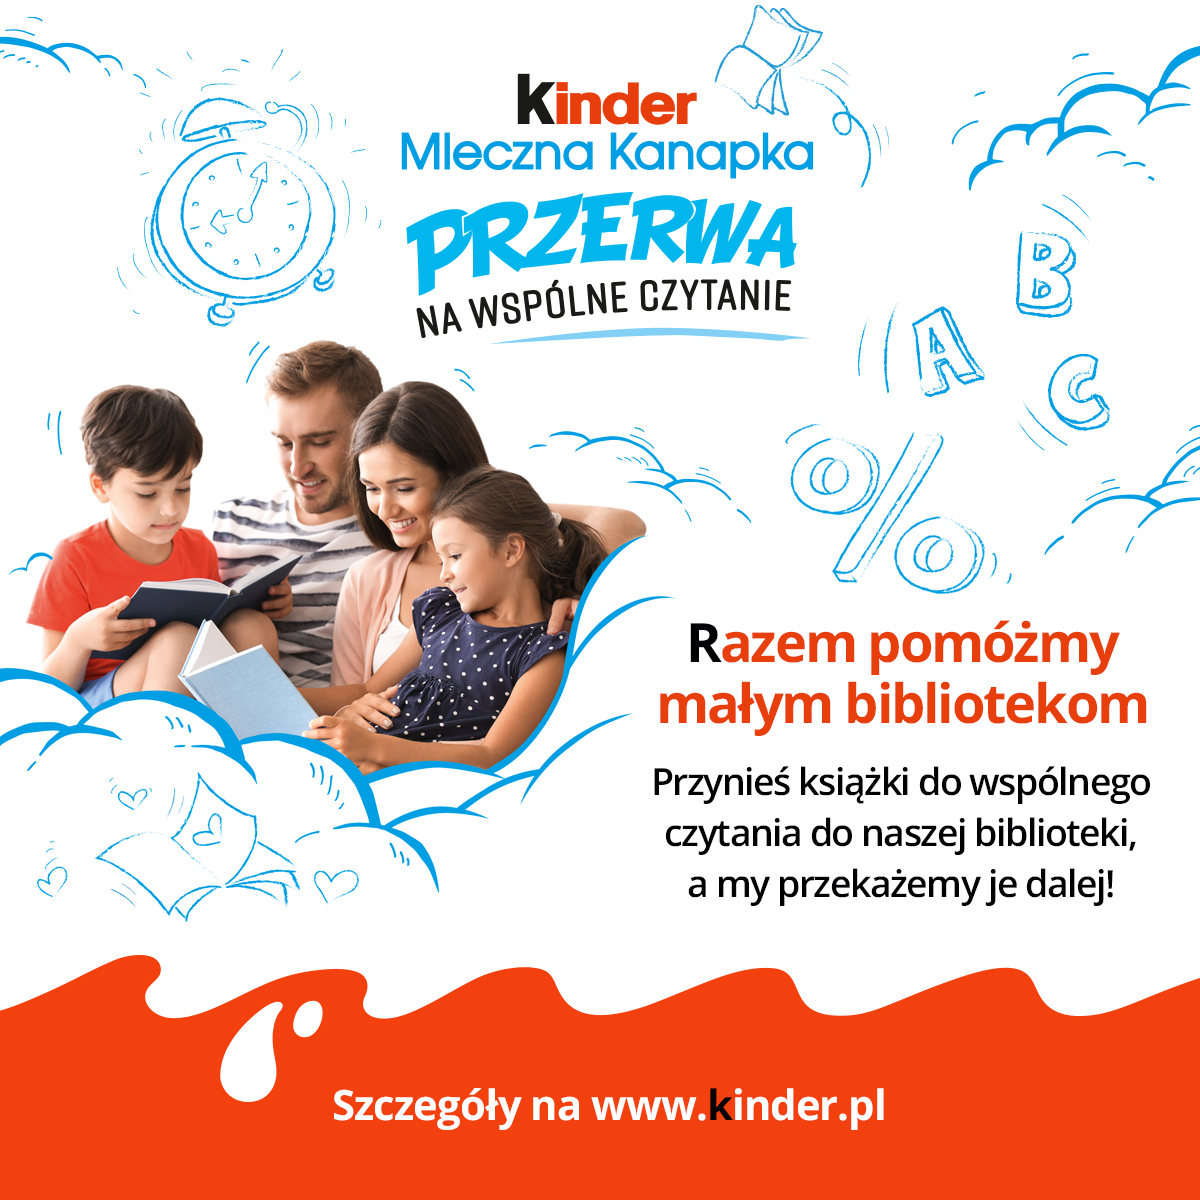  Plakat informacyjny akcji Kinder i wydawnictwa Znak. 